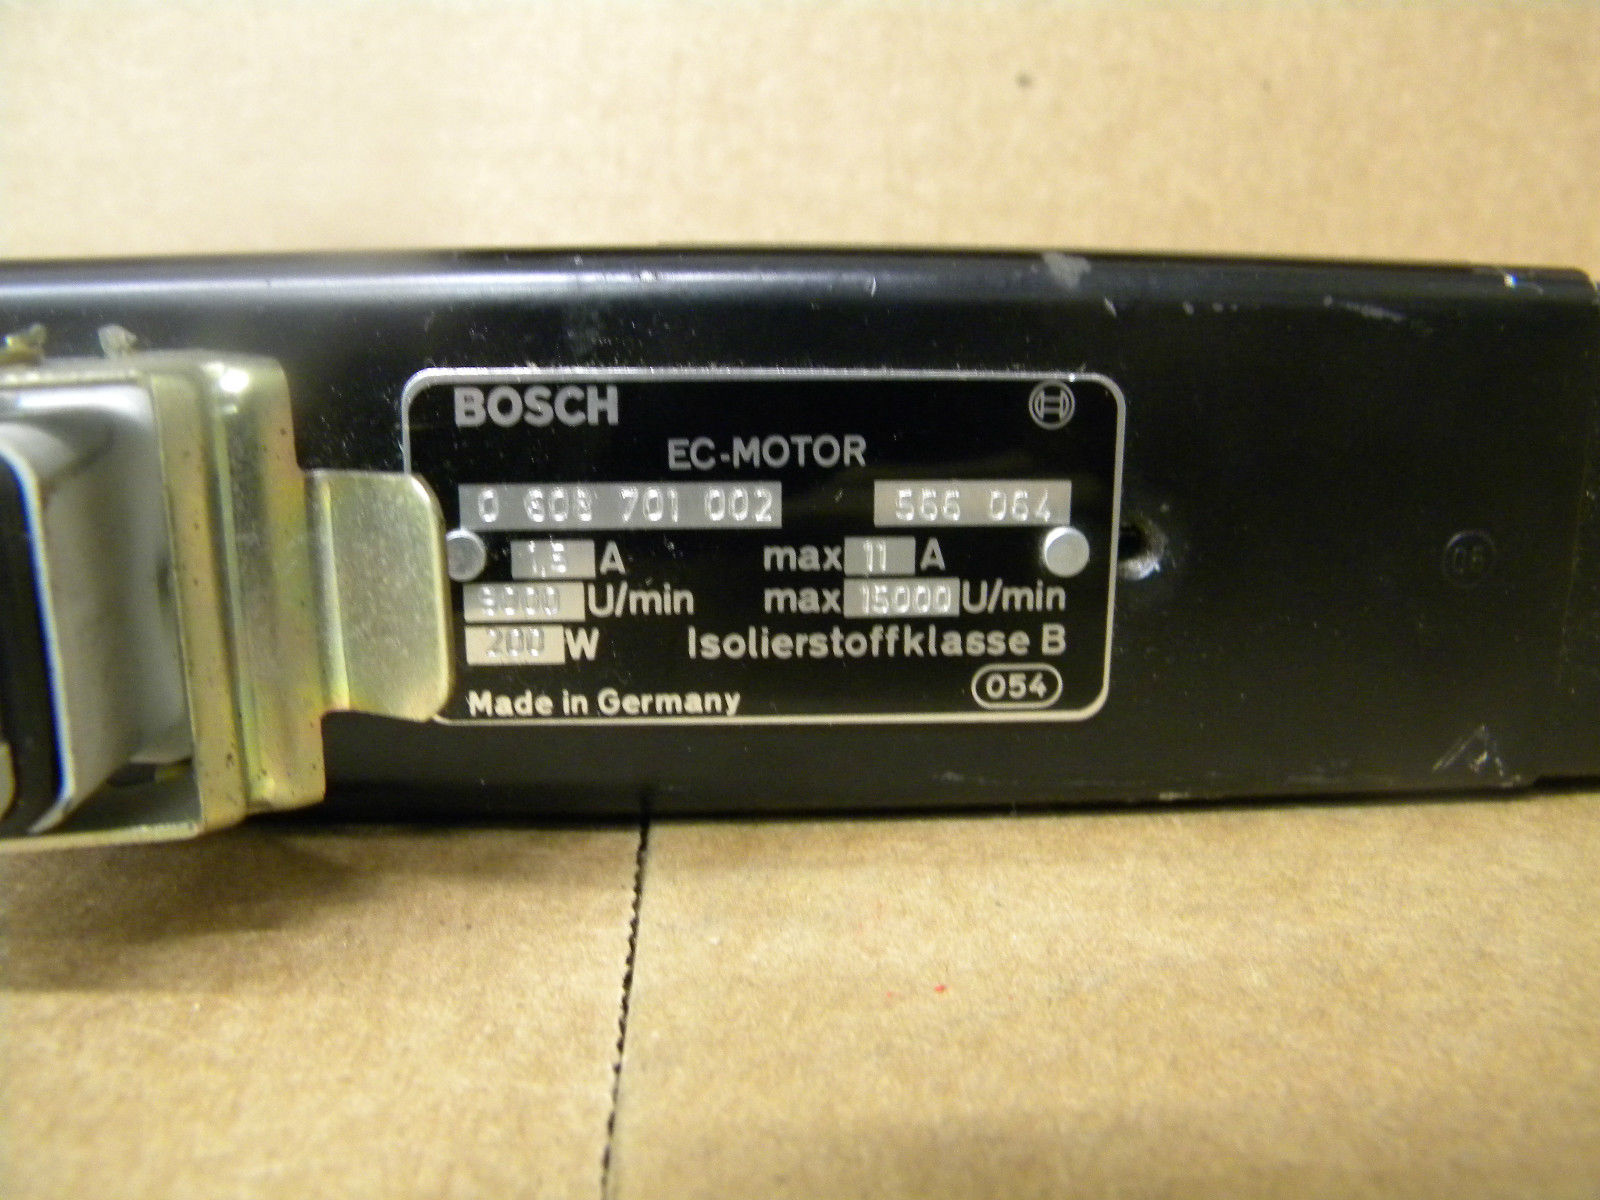 BOSCH 0-608-701-002 EC-MOTOR 0608701002 0-608-701-002,Bosch,PLC